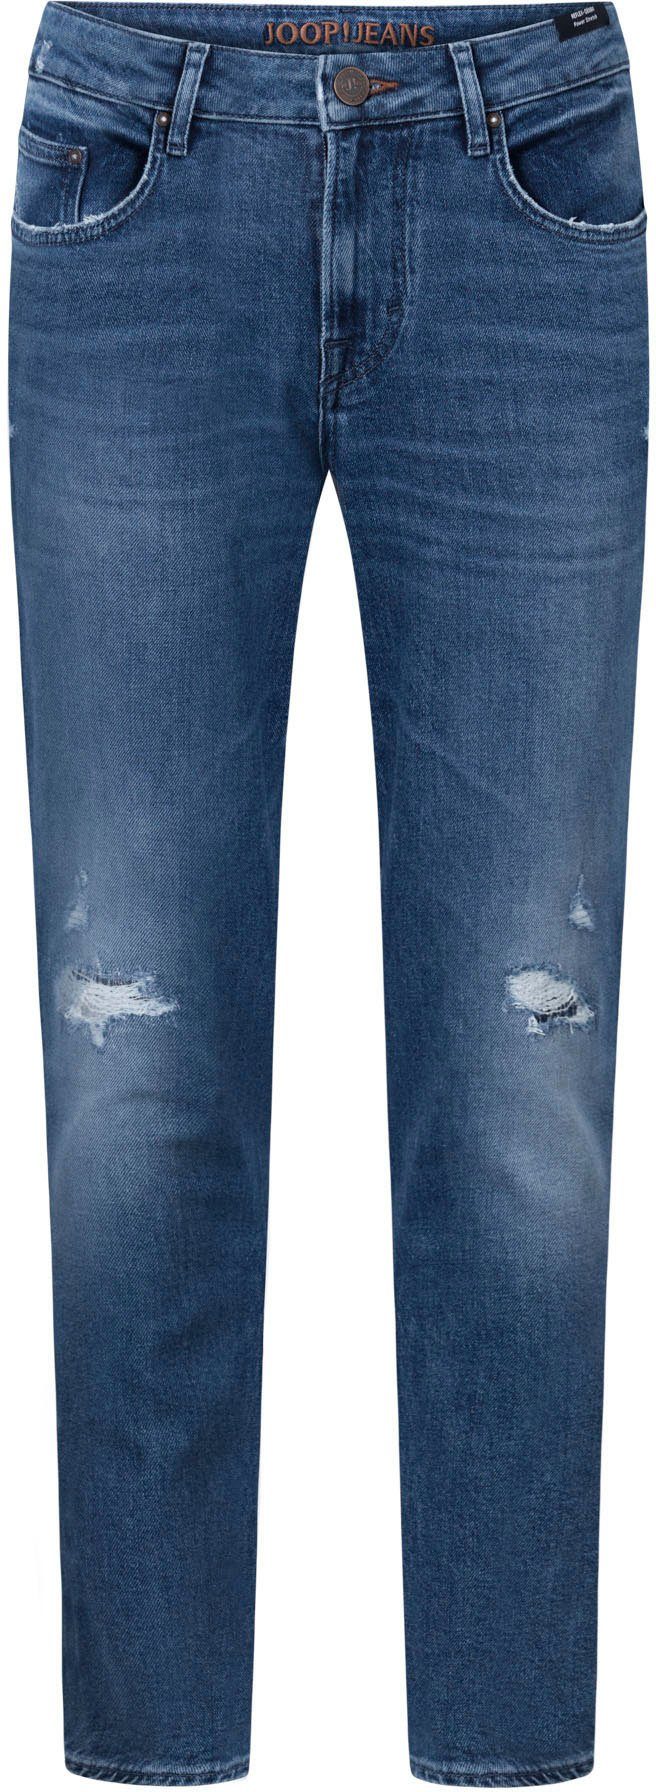 Joop Джинсы Straight-Jeans in 5-Pocket Form